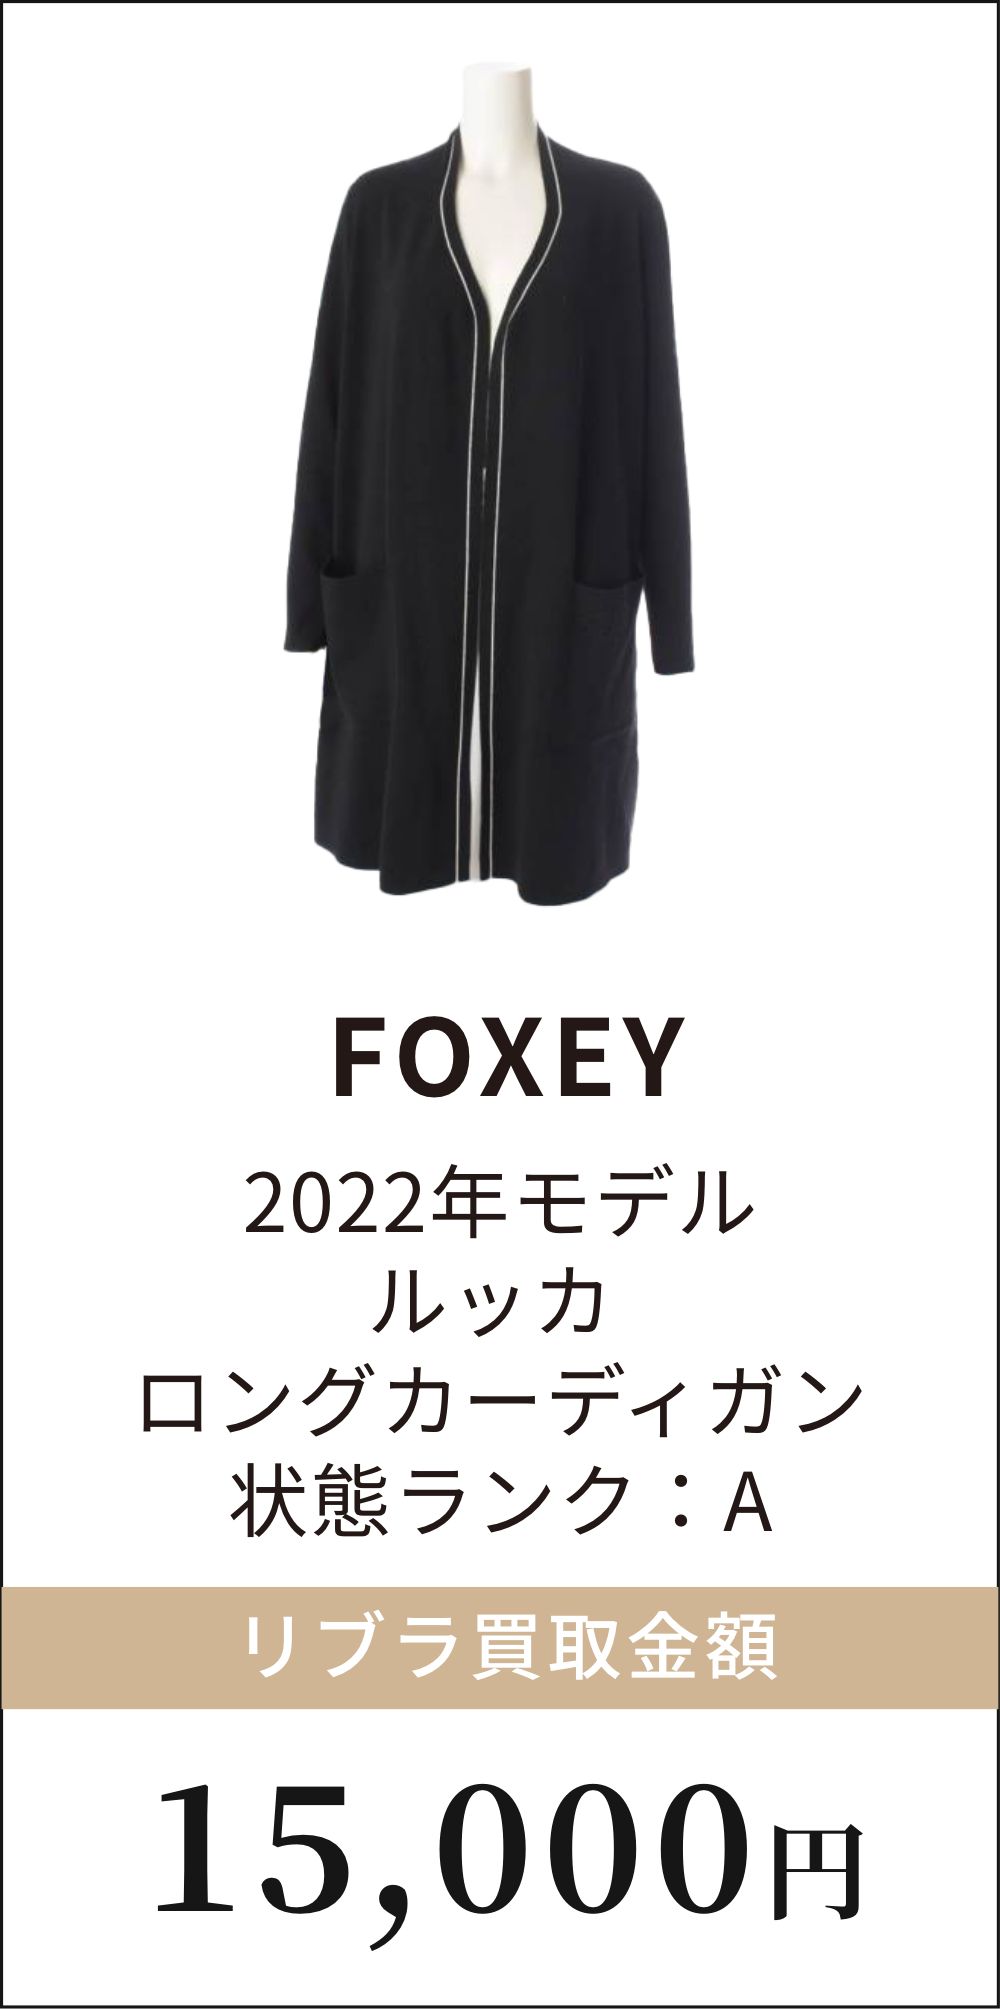 FOXEY 2022年モデル ルッカ ロングカーディガン